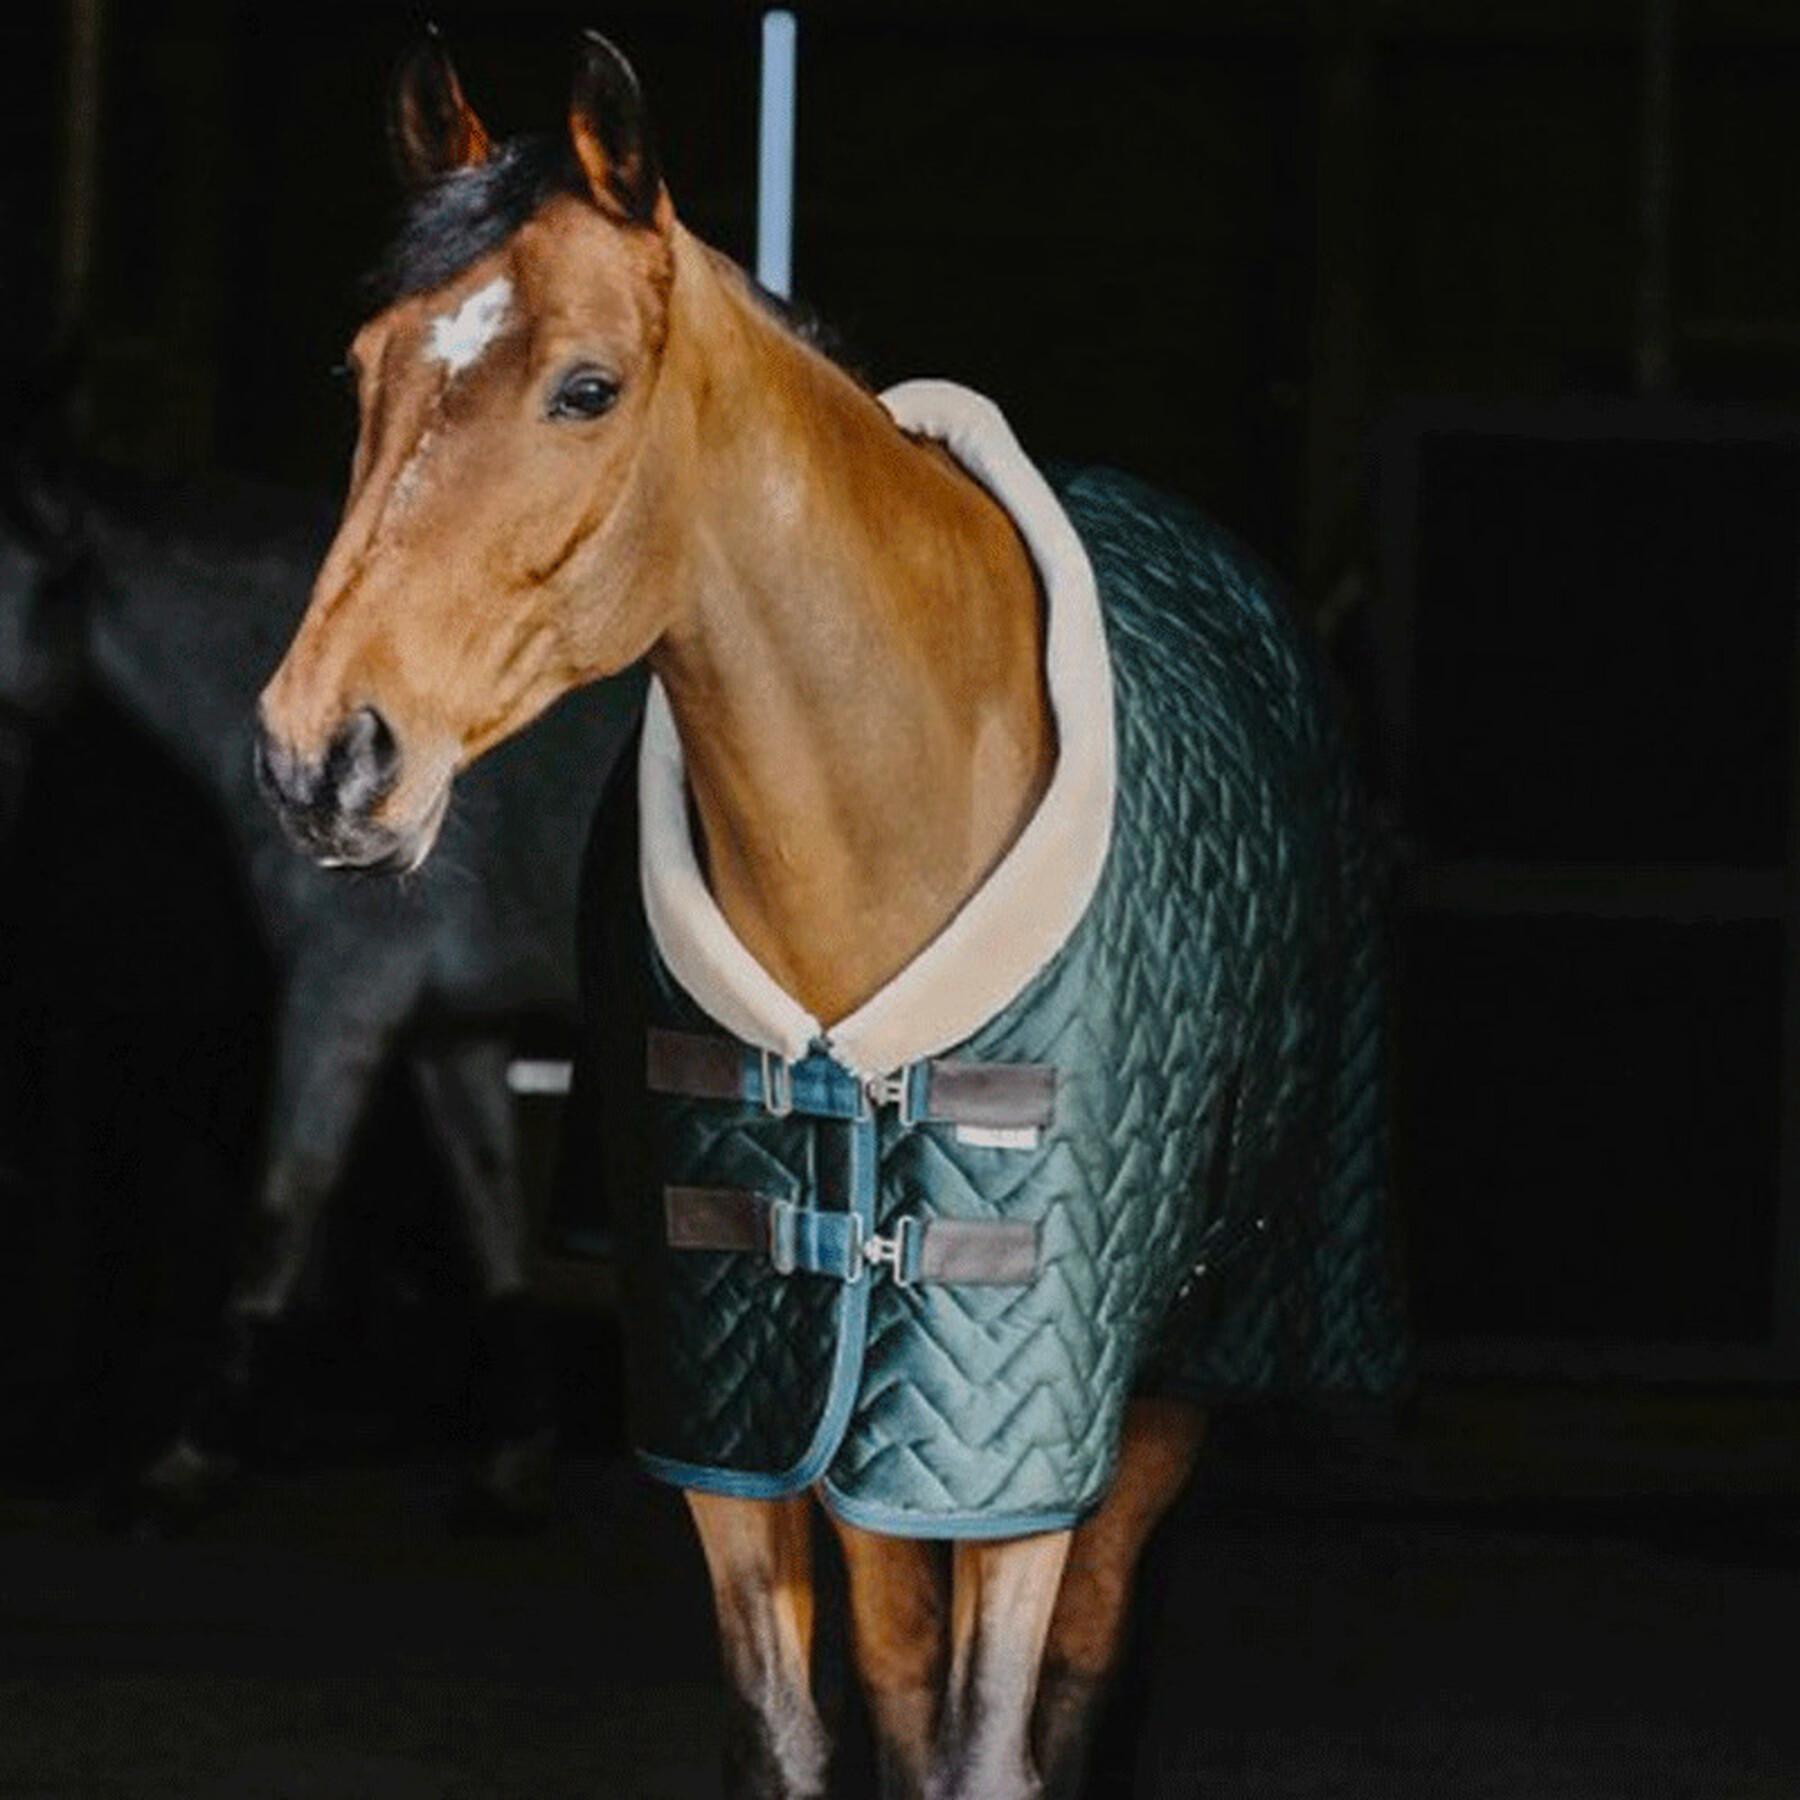 Outdoor velvet horse blanket Equithème Teddy 150 g